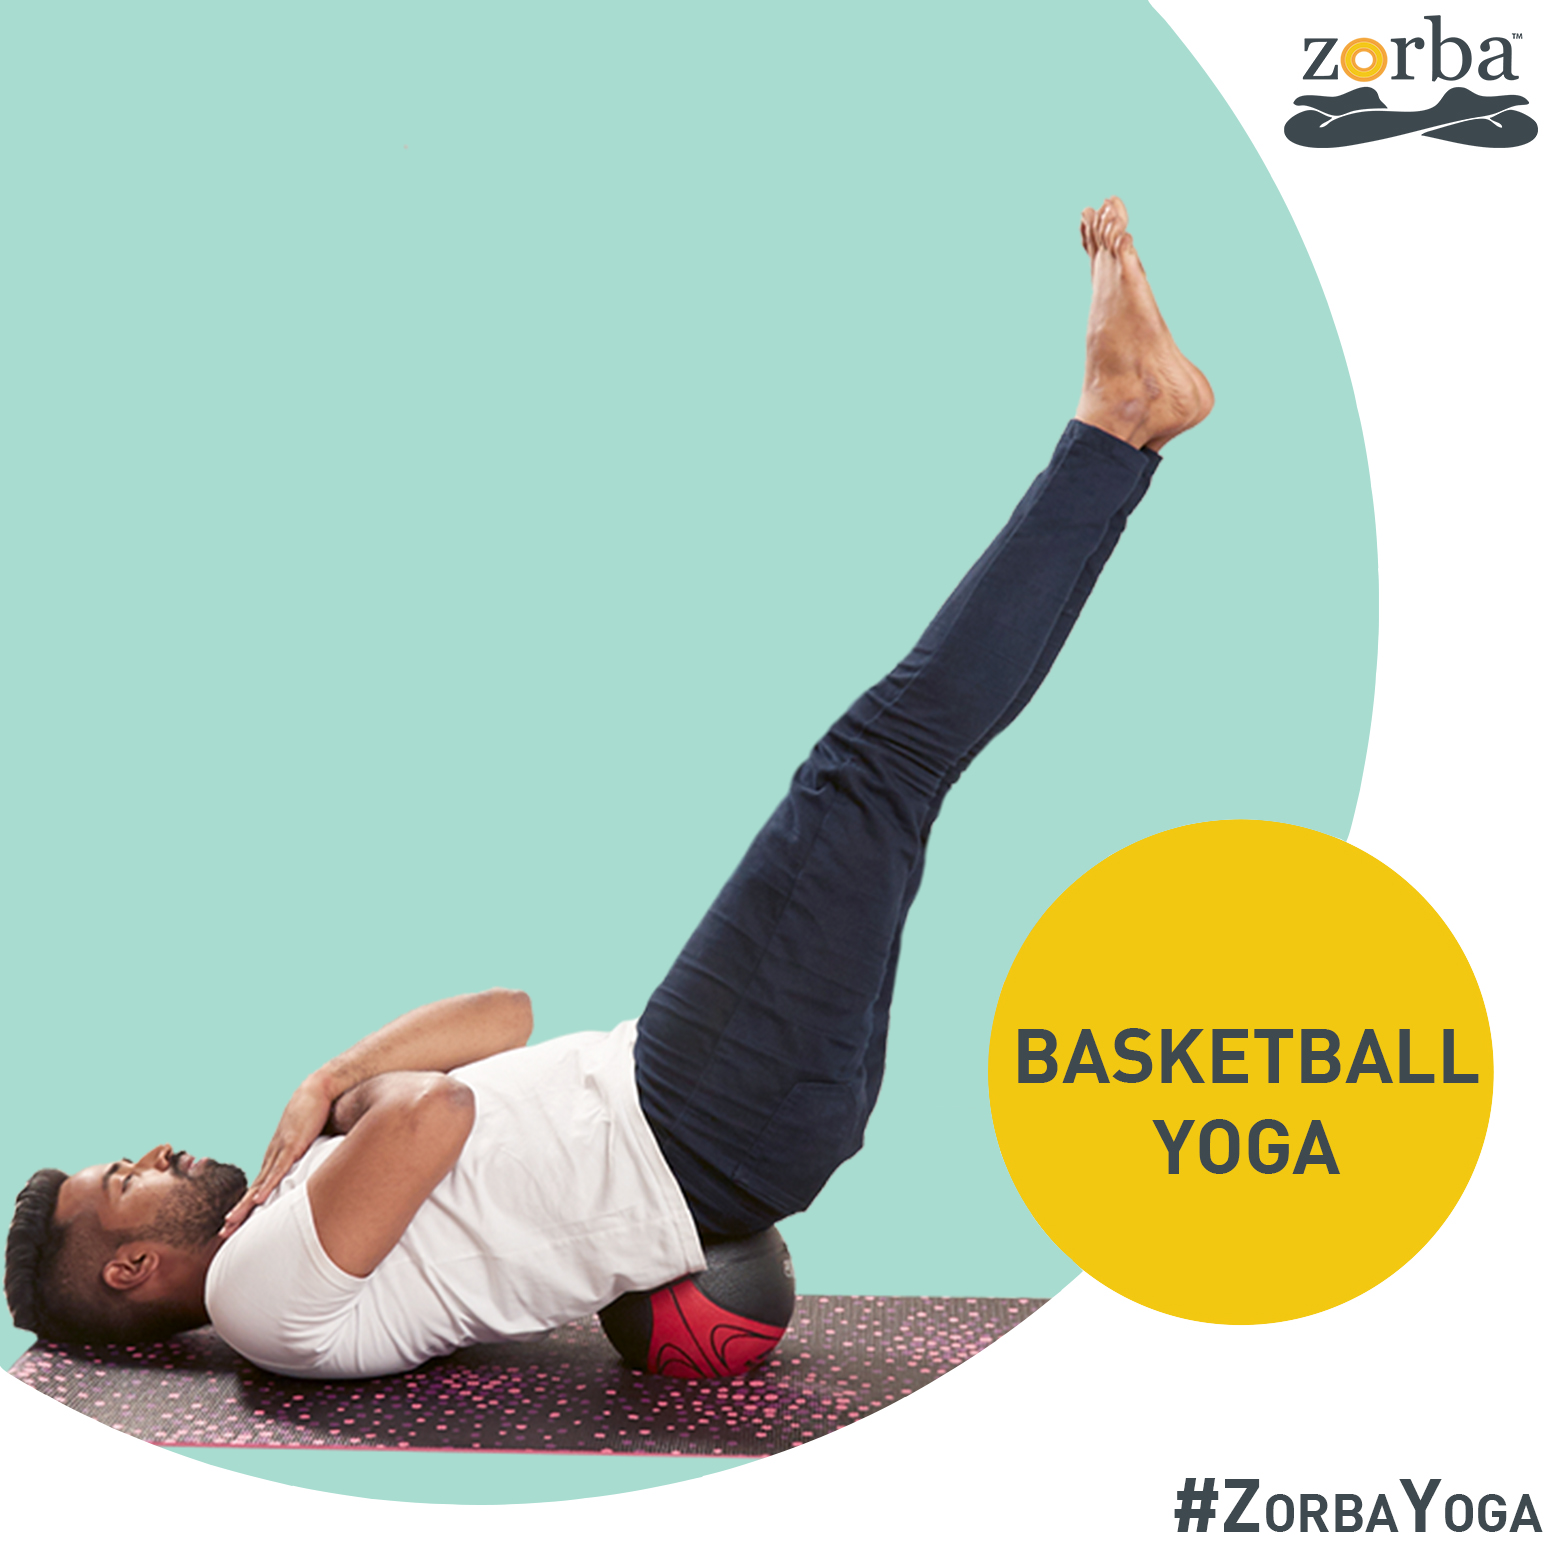 Basketball Yoga at Zorba